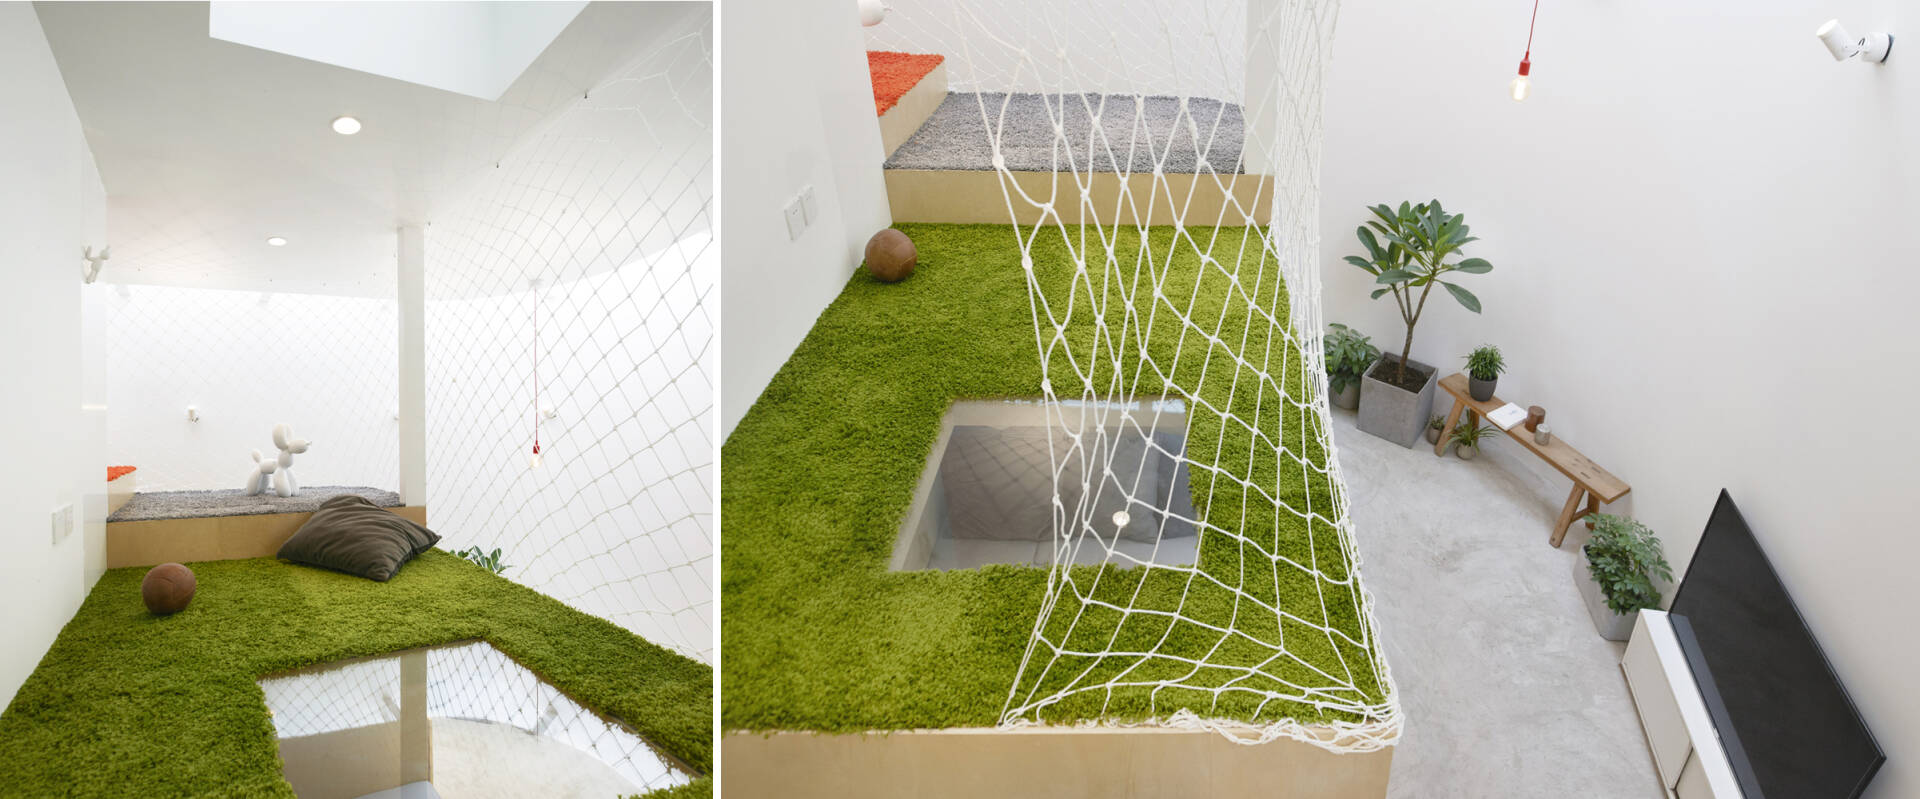 Khu vui chơi trên tầng lửng được trải thảm và bảo vệ bằng lưới an toàn, tạo cảm giác như một sân bóng thu nhỏ